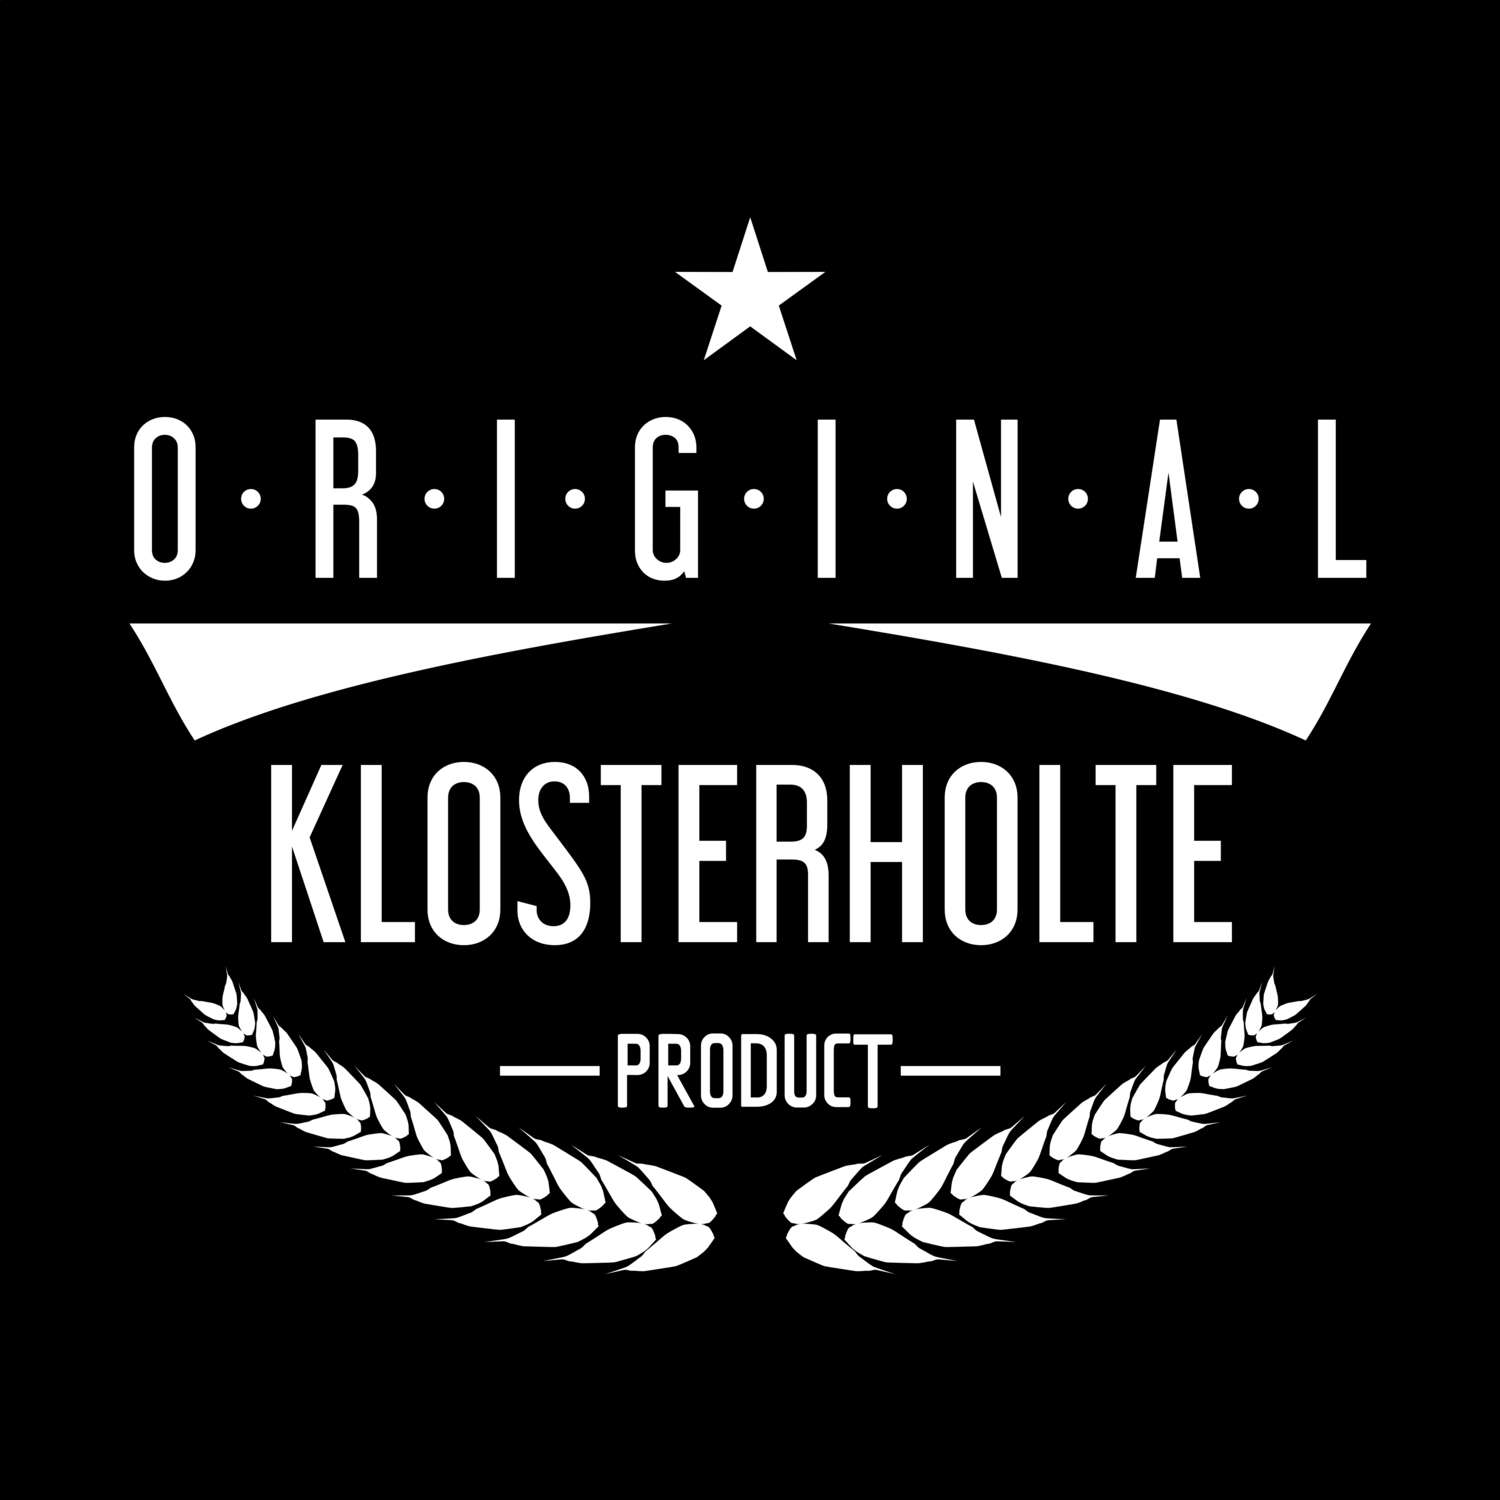 Klosterholte T-Shirt »Original Product«